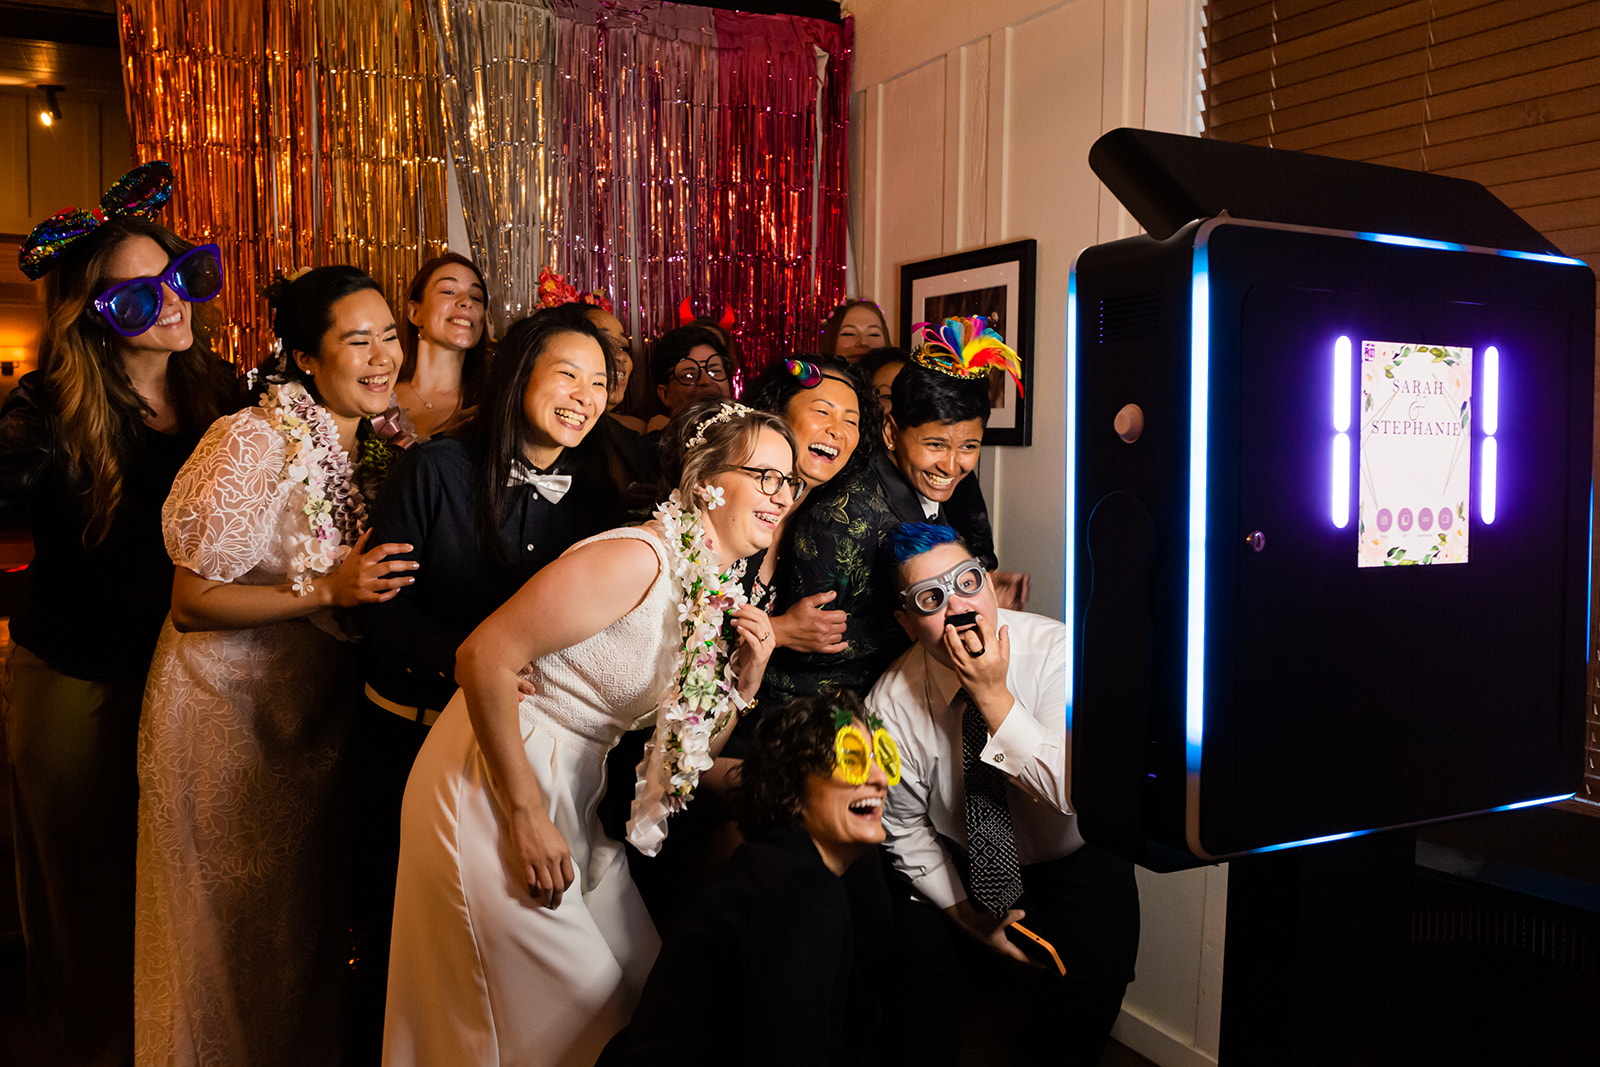 LGBTQ+ friends enjoy photo booth at wedding reception